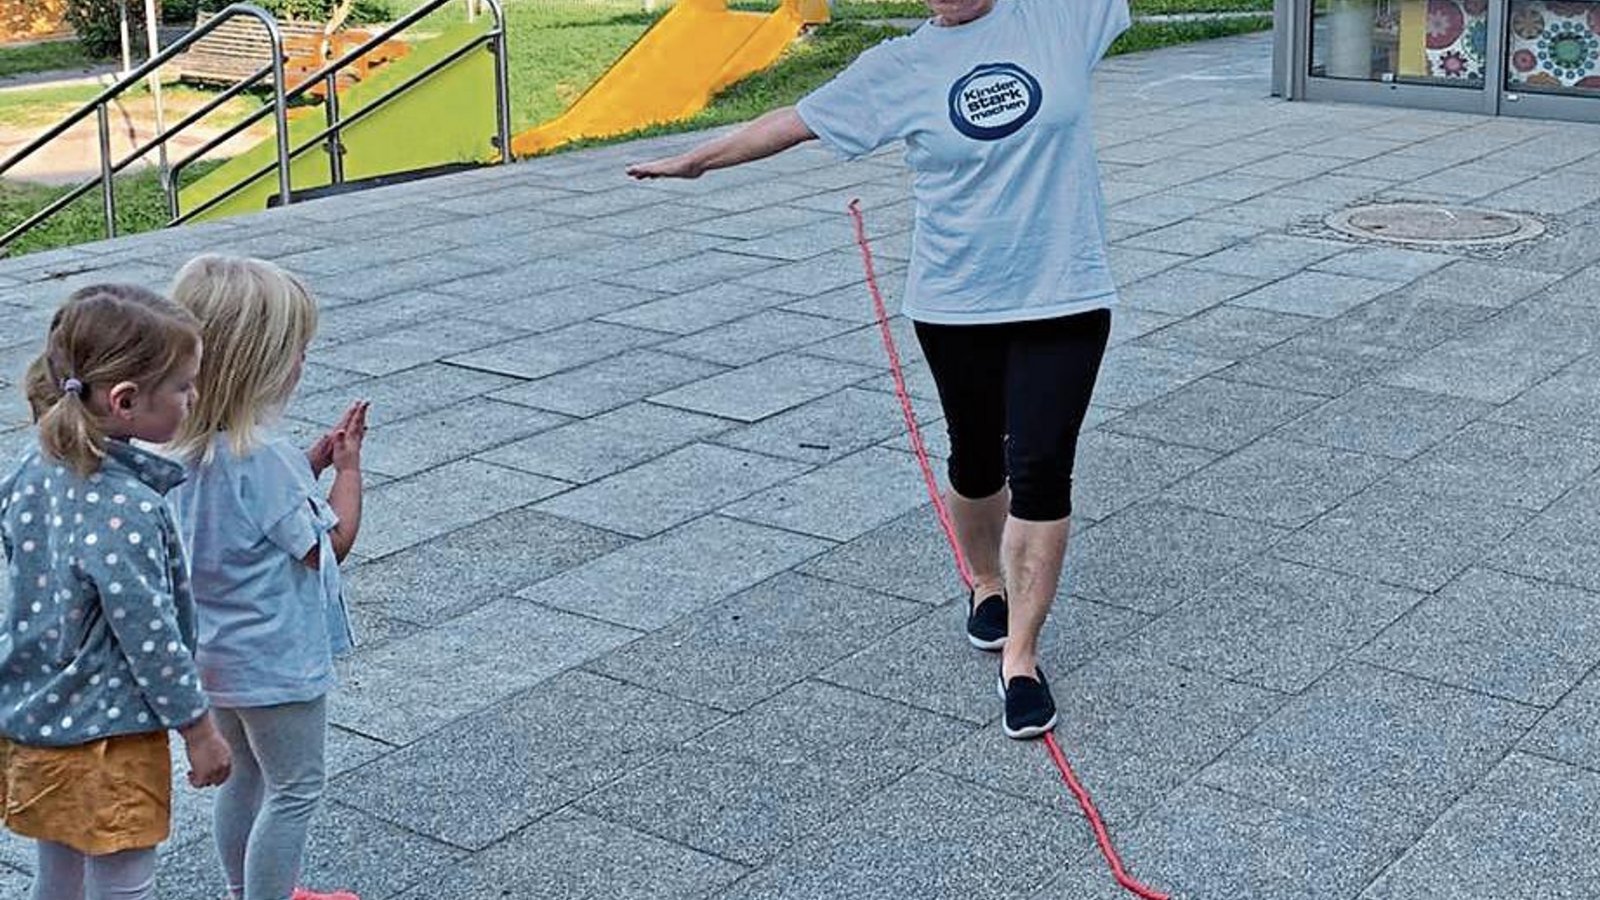 Das Gleichgewicht auf einem auf dem Boden liegenden Seil halten, das Karin Geske (rechts) demonstriert, überfordert manches Kind.   Foto: privat